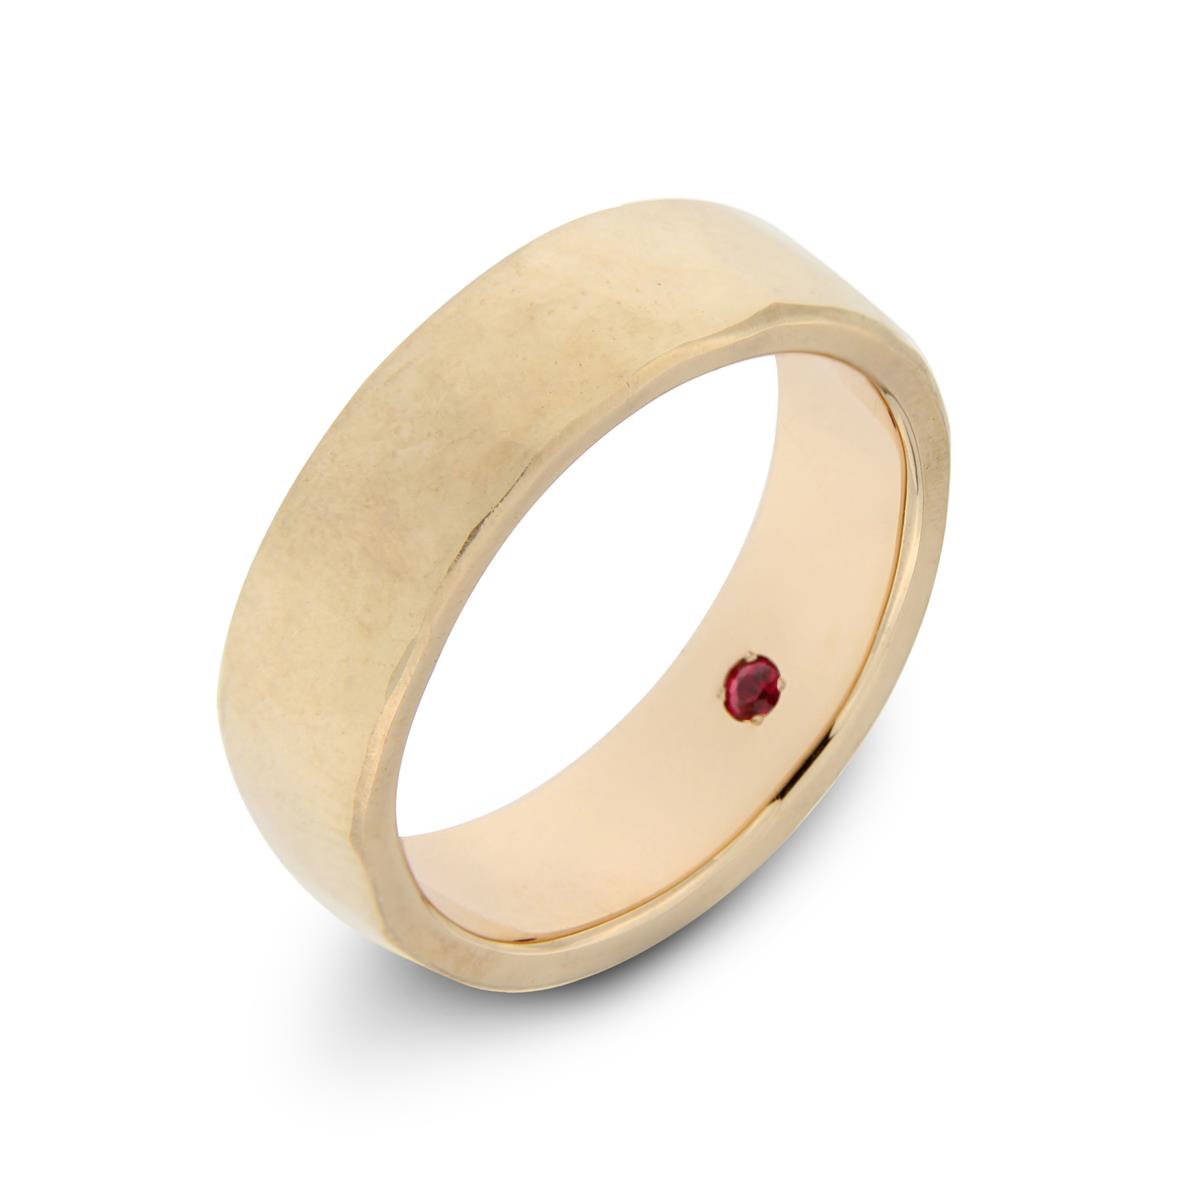 Katie g. Jewellery_Wedding Collection 2019_Herrenring - Breiter 14kt. Roségold Ring leicht texturiert mit Rubin auf Innenseite gefasst